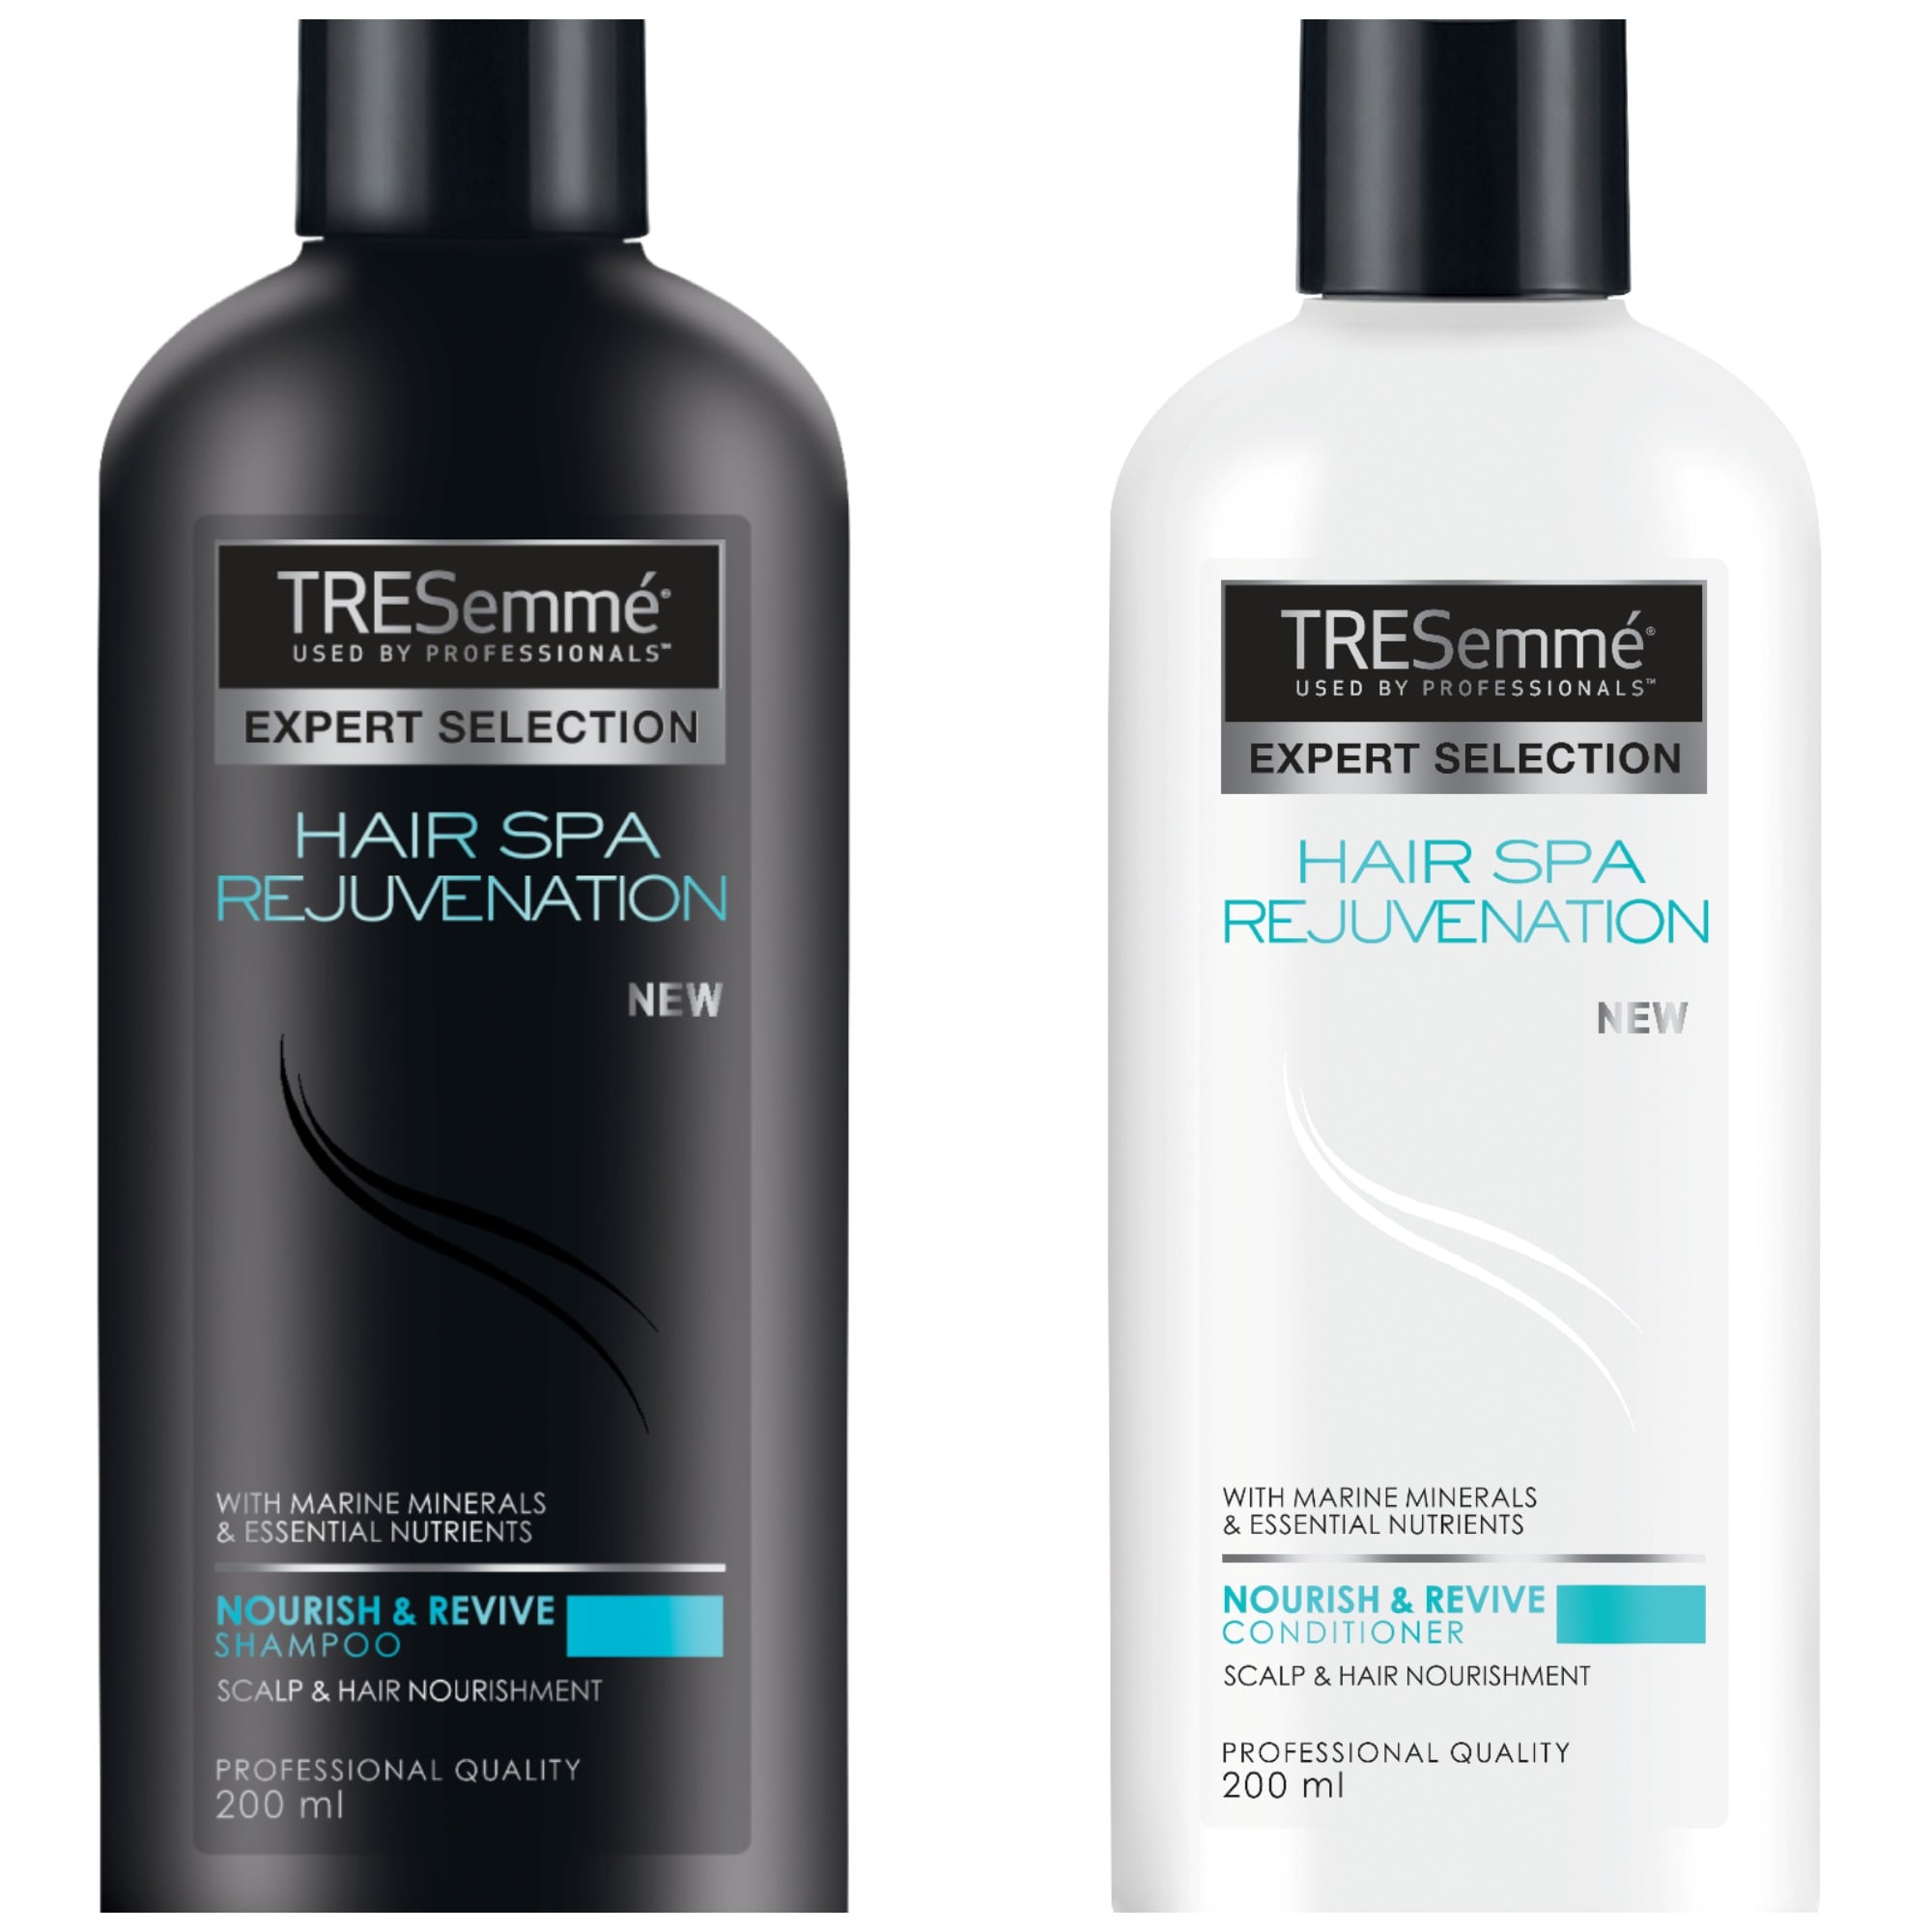 TRESemmé Hair Spa Rejuvenation range | Let's Expresso